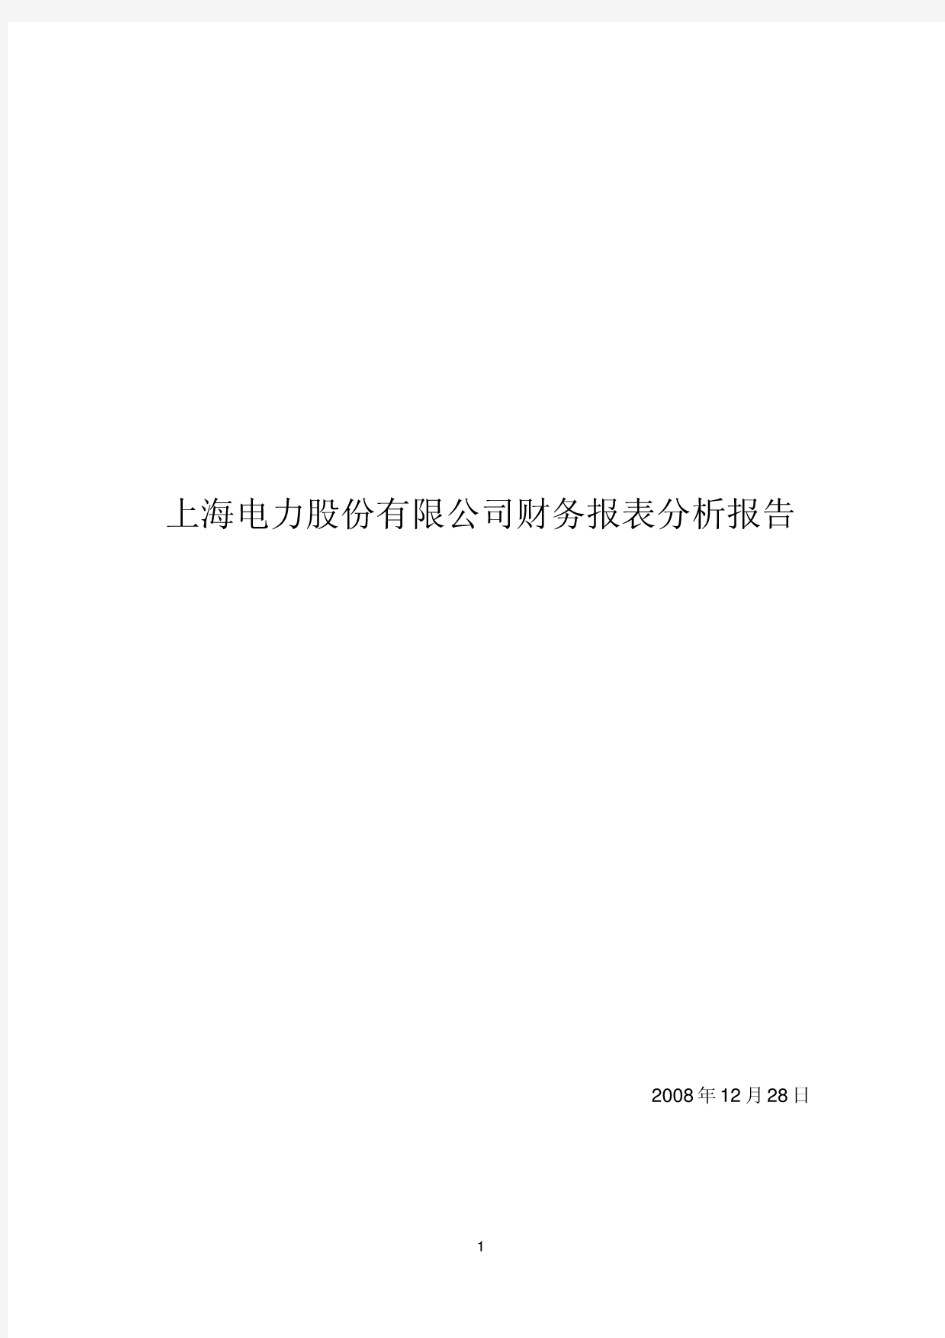 上海电力股份有限公司财务报表分析报告